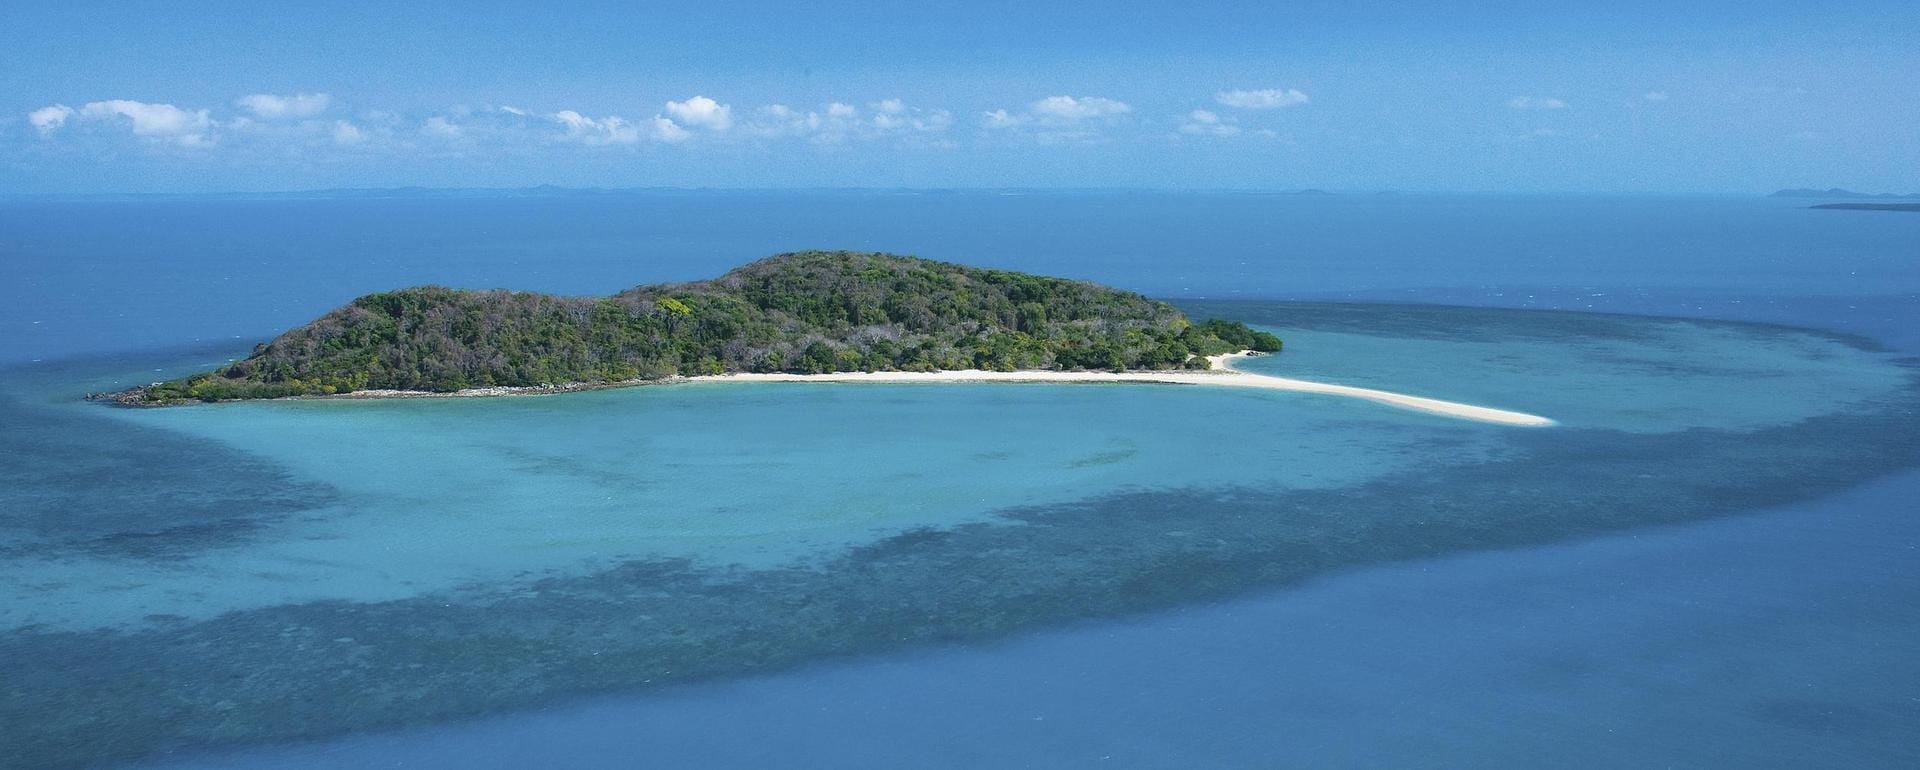 Kokosnuss-Insel - der Name zergeht auf der Zunge. Es gibt ihn gleich mehrmals. Zum Beispiel vor Hawaii und vor der Küste Thailands. Die abgelegenste der Kokosnuss-Inseln aber ist Coconut Island in der Torres Strait, einer Meerenge zwischen Australien und Papua-Neuguinea.